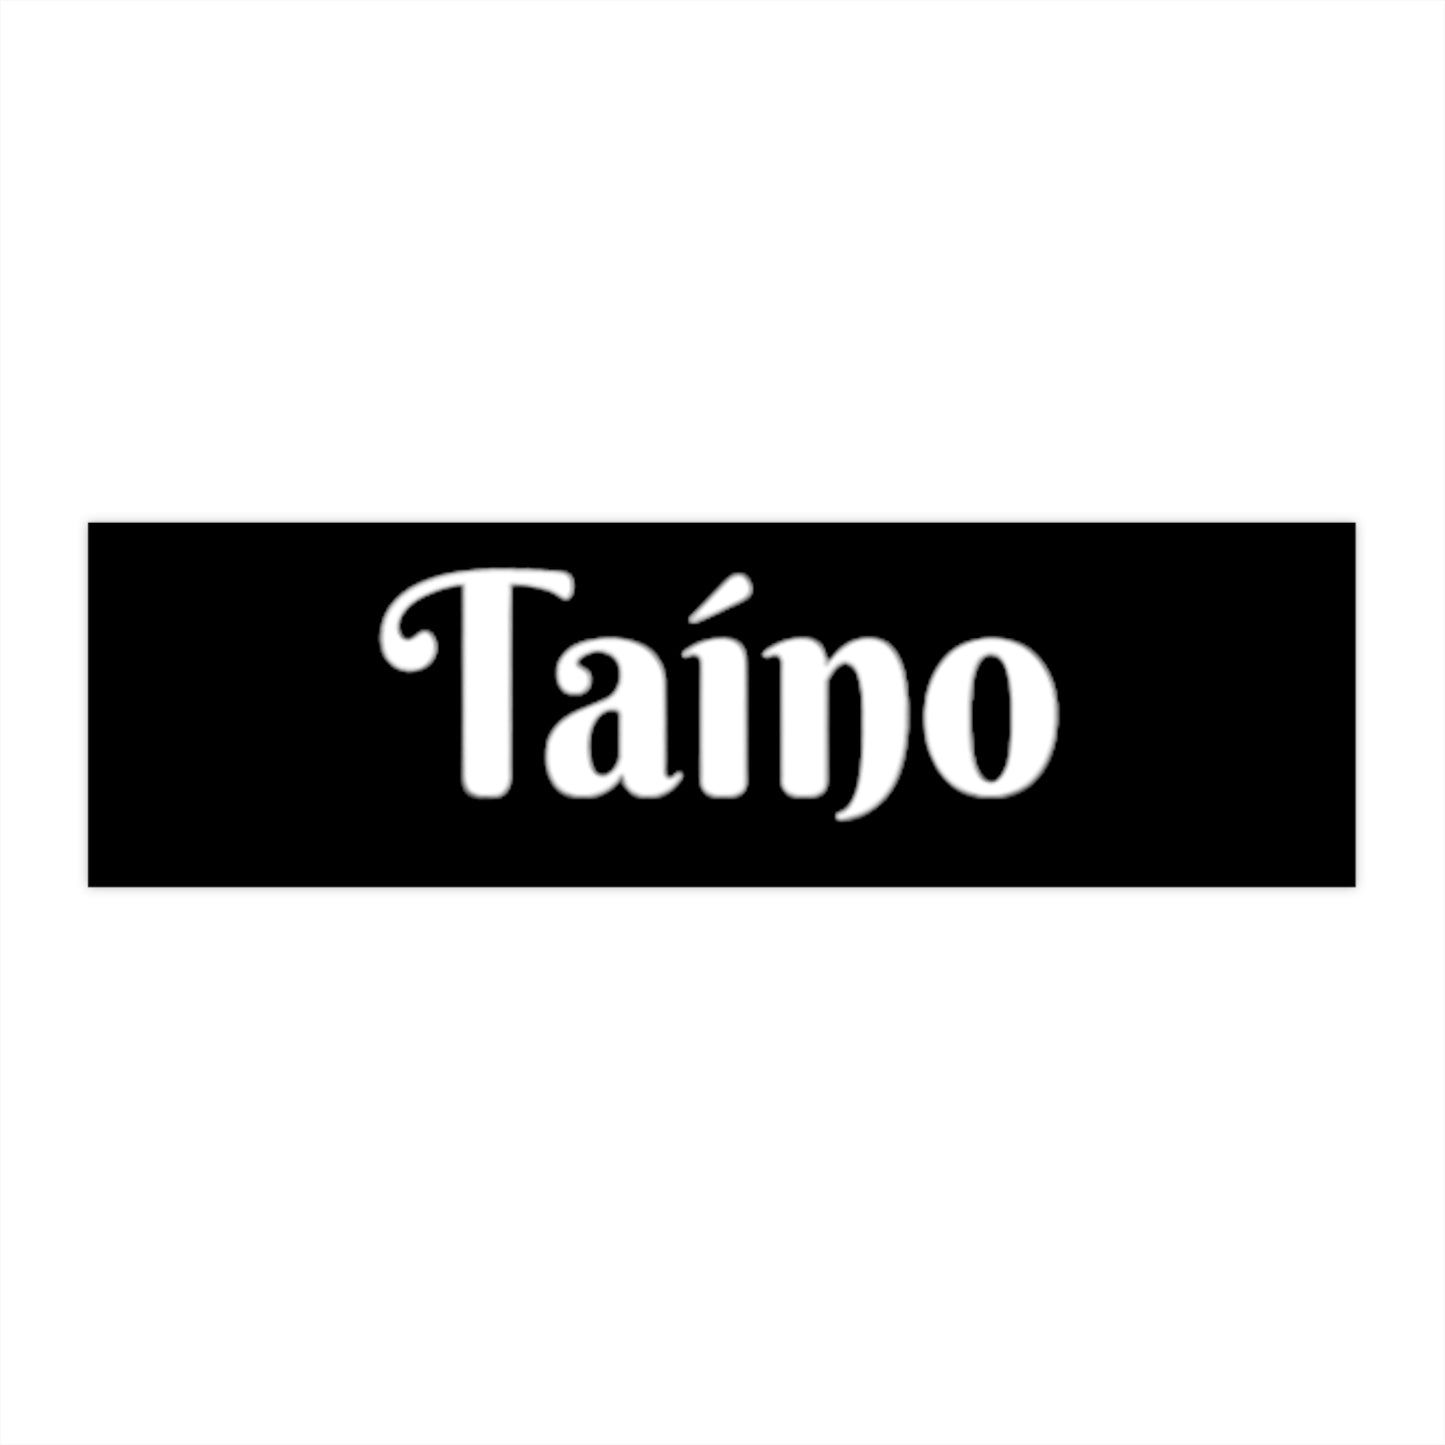 Taino Bumper Stickers